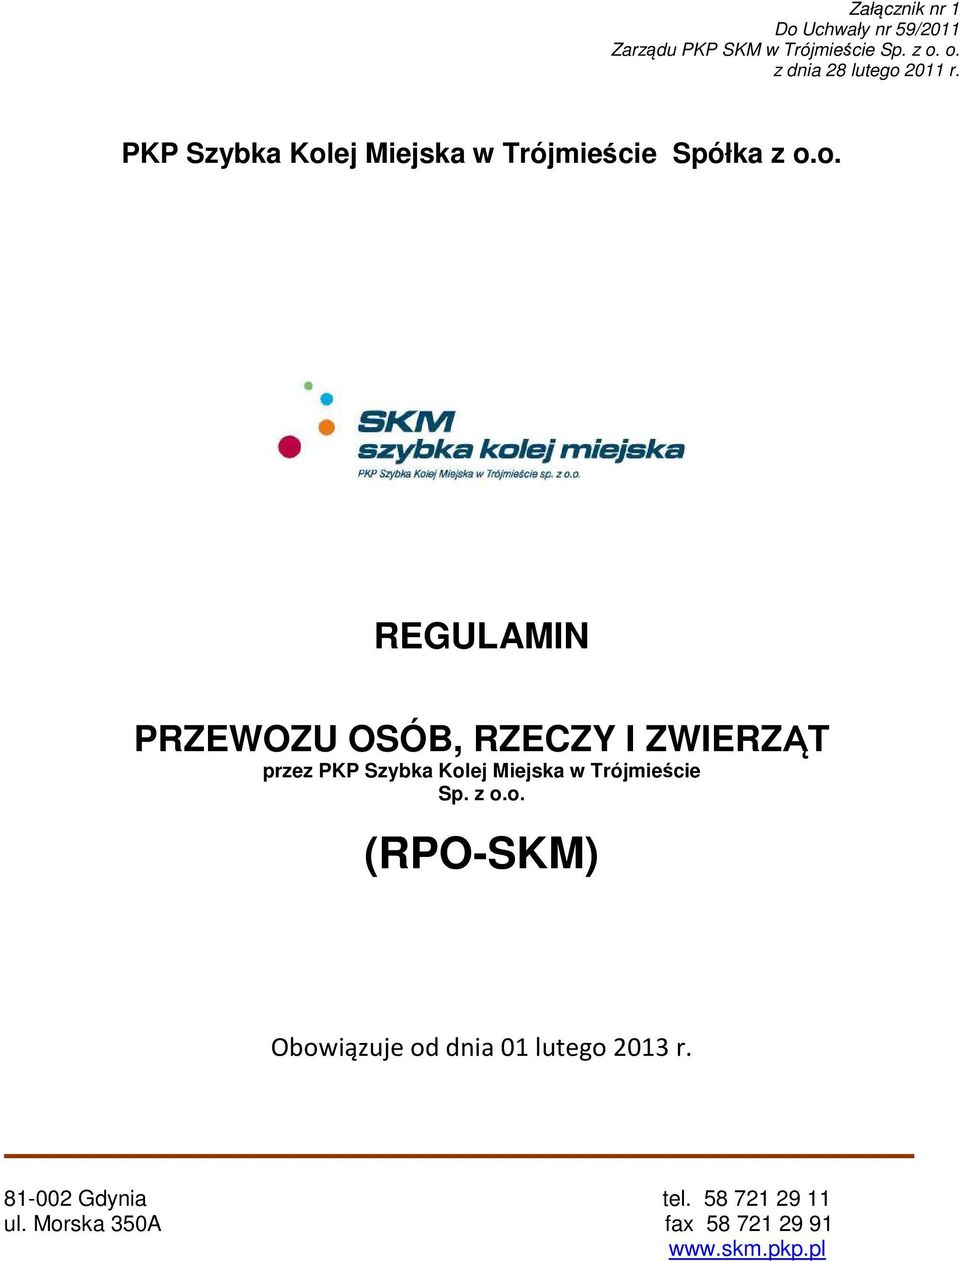 z o.o. (RPO-SKM) Obowiązuje od dnia 01 lutego 2013 r. 81-002 Gdynia tel. 58 721 29 11 ul.